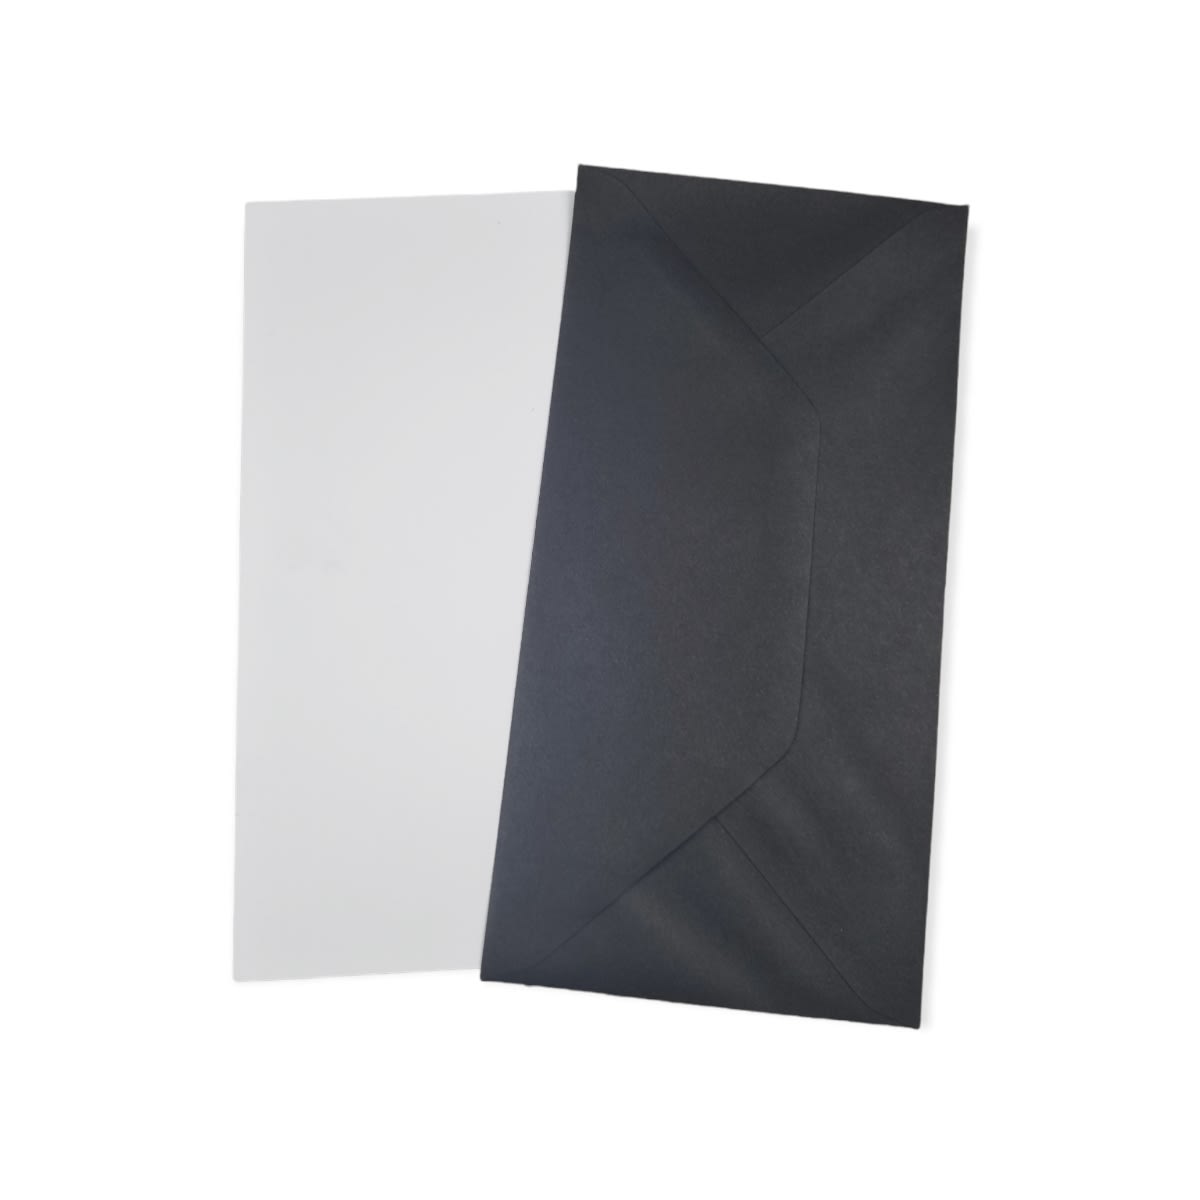 DL White Card Blanks & Black Envelopes (Pack of 10)